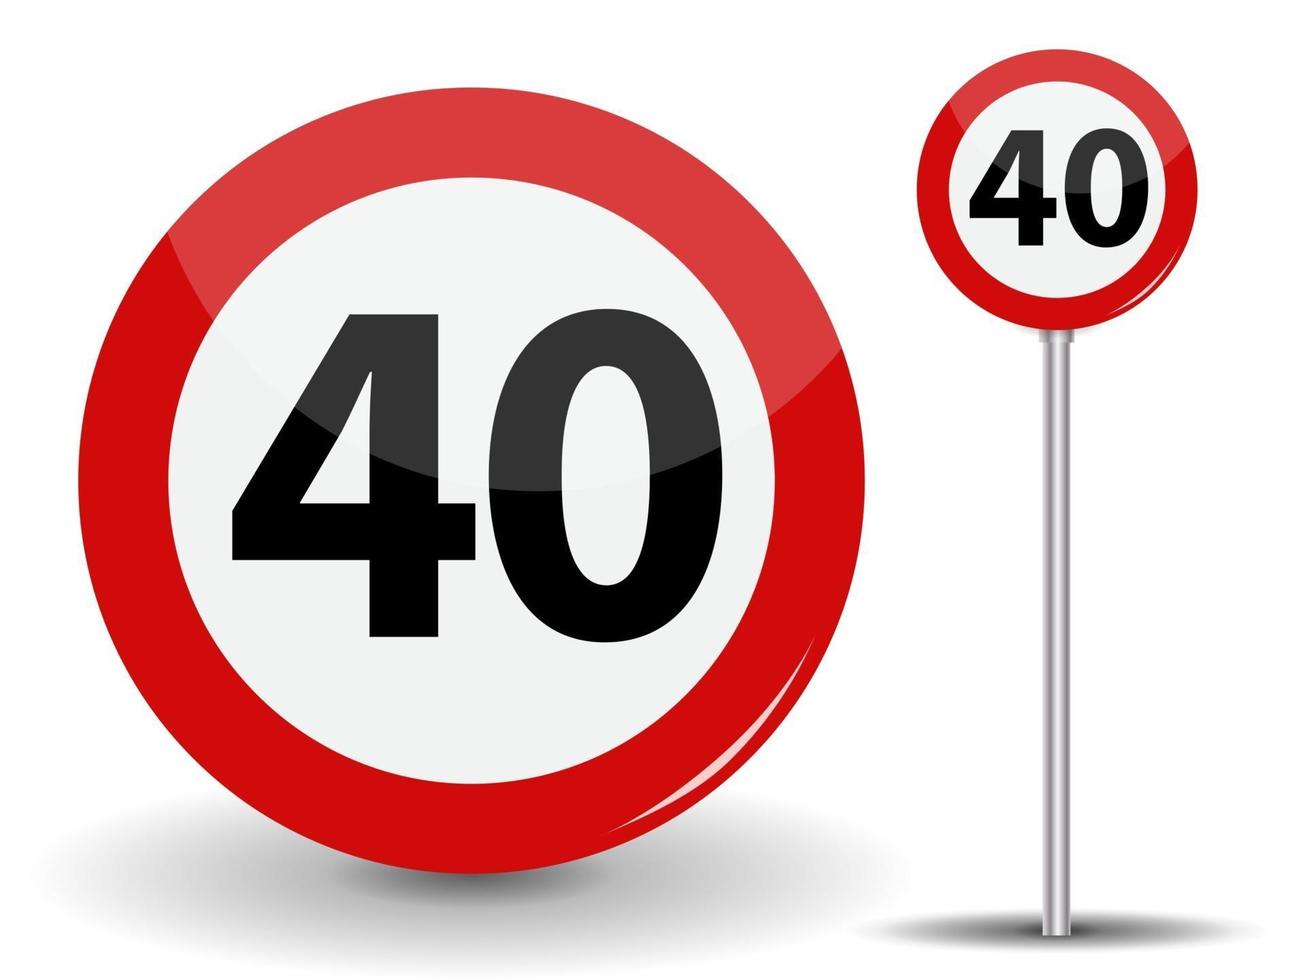 Señal de carretera roja redonda límite de velocidad de 40 kilómetros por hora vector